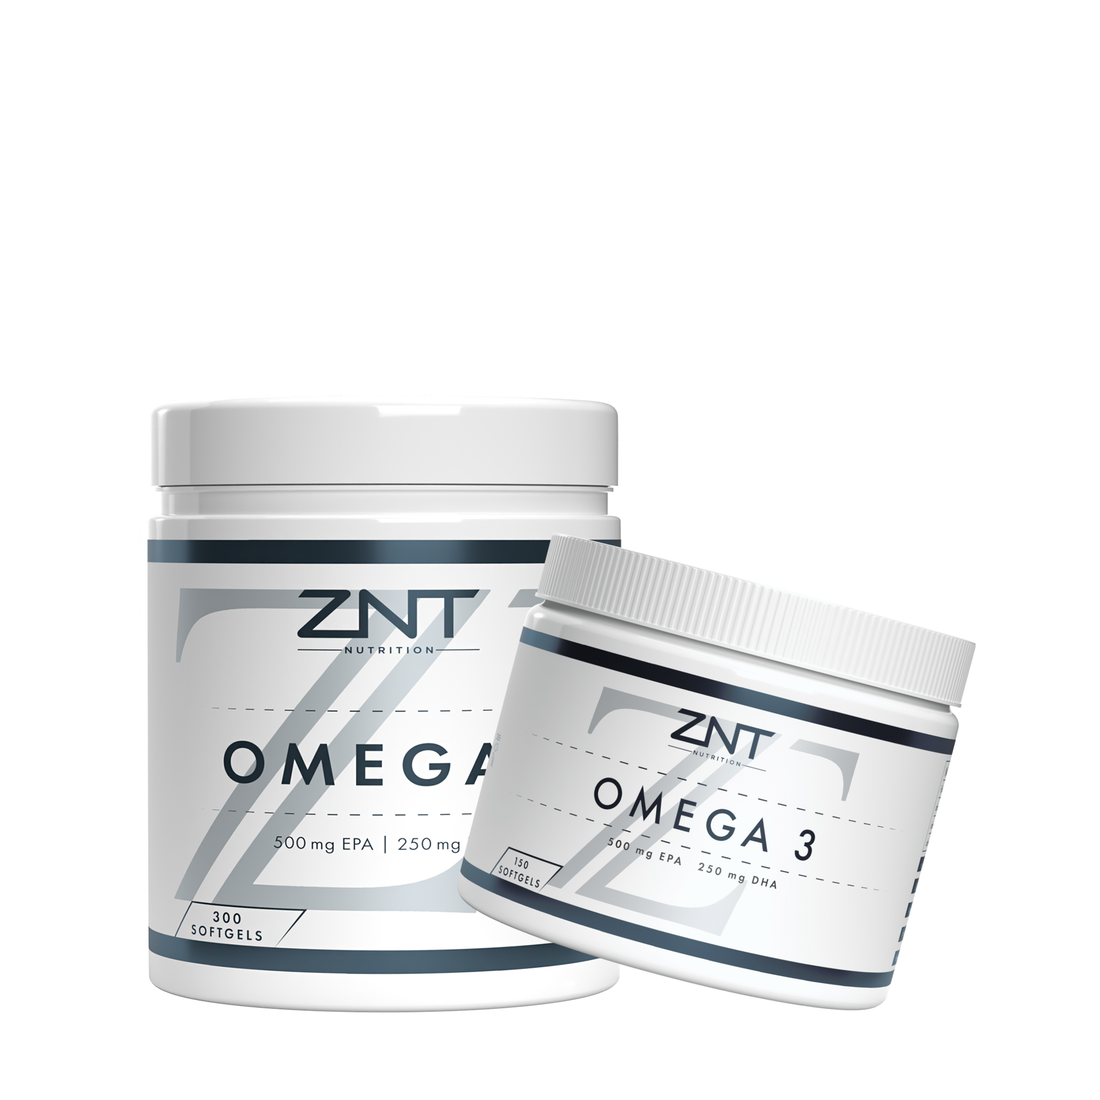 Omega 3 Softgels - ZNT Nutrition